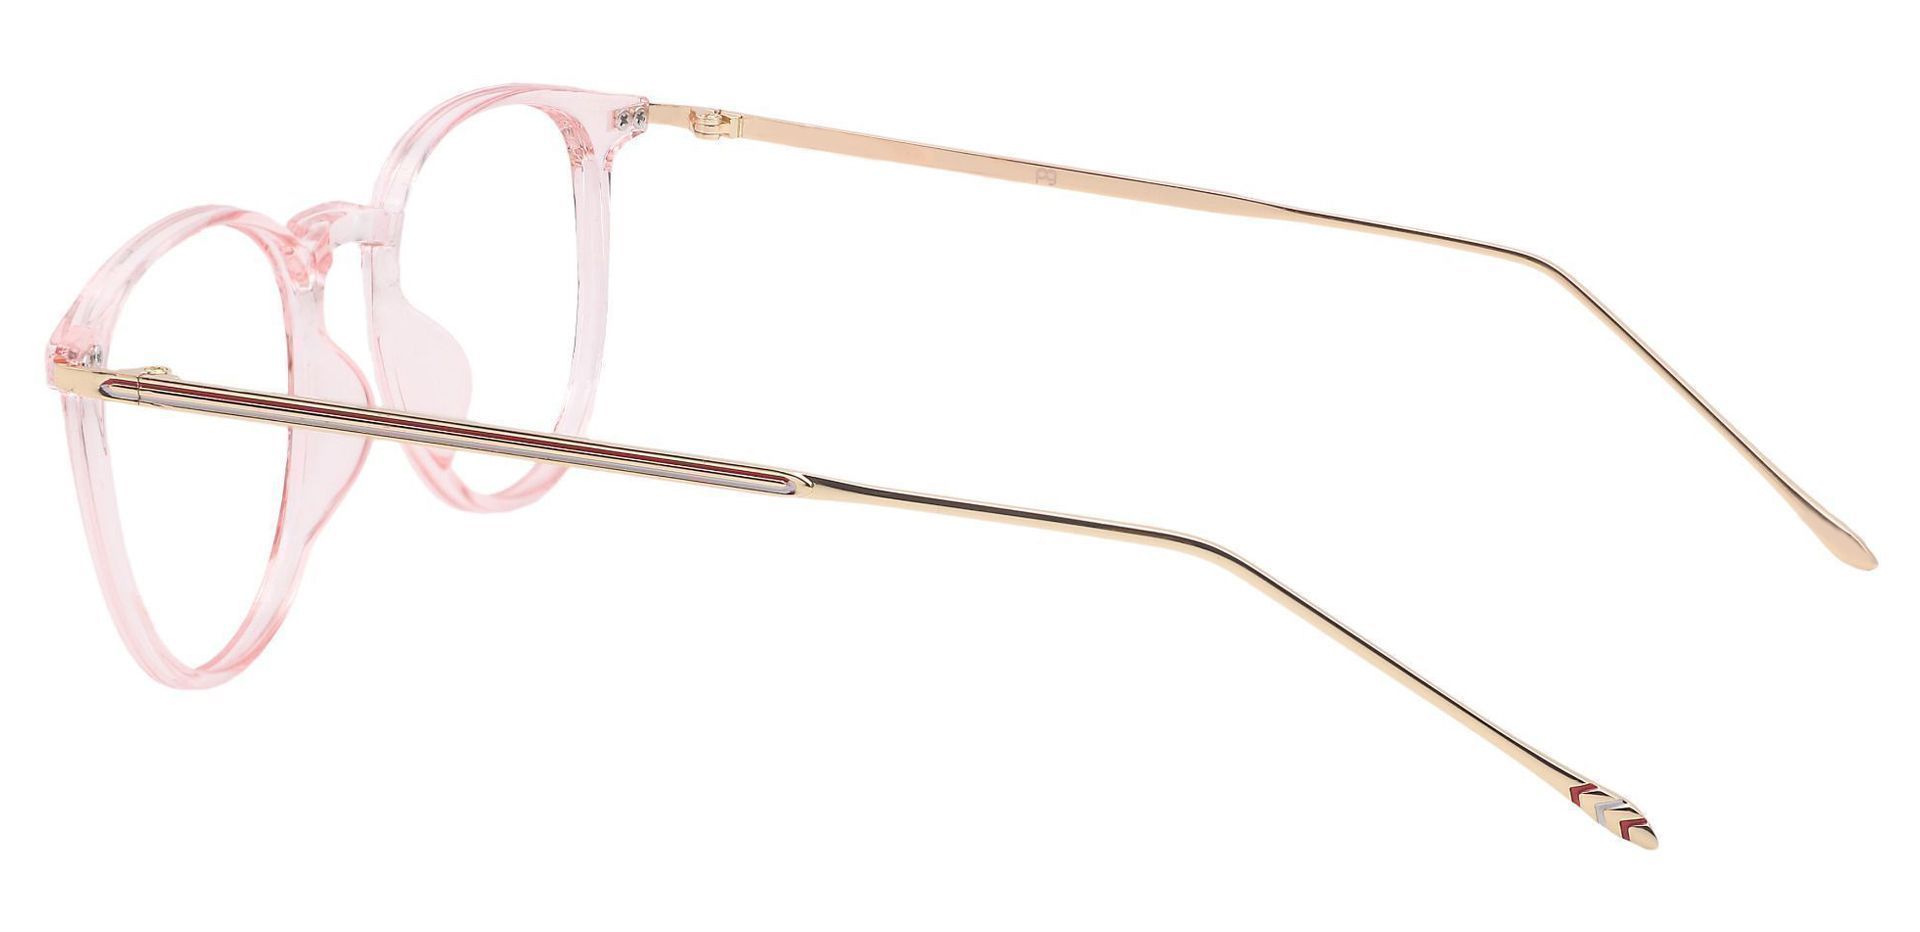 Elliott Round Eyeglasses Frame - Pink